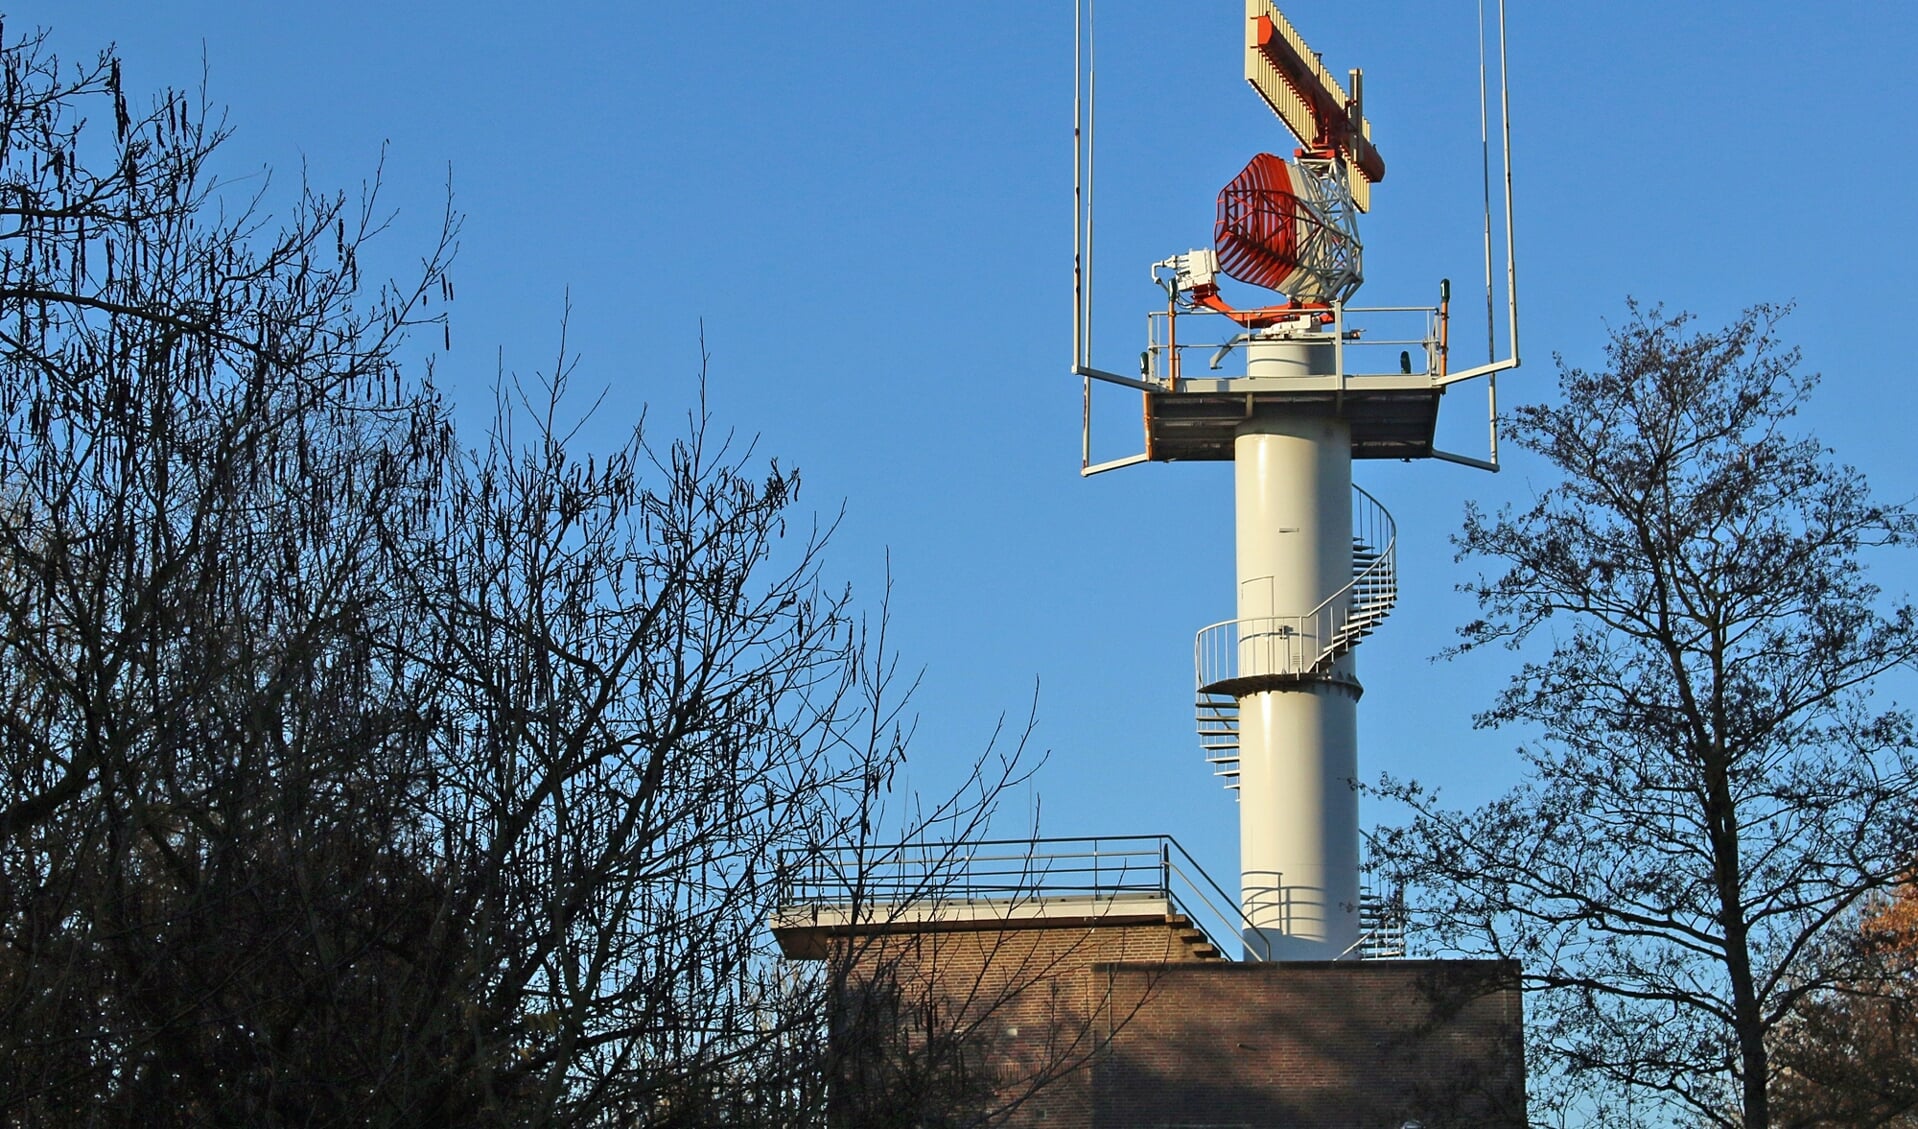 De radartoren in het Amsterdam wordt niet meer voor luchtvaartdoeleinden gebruikt.